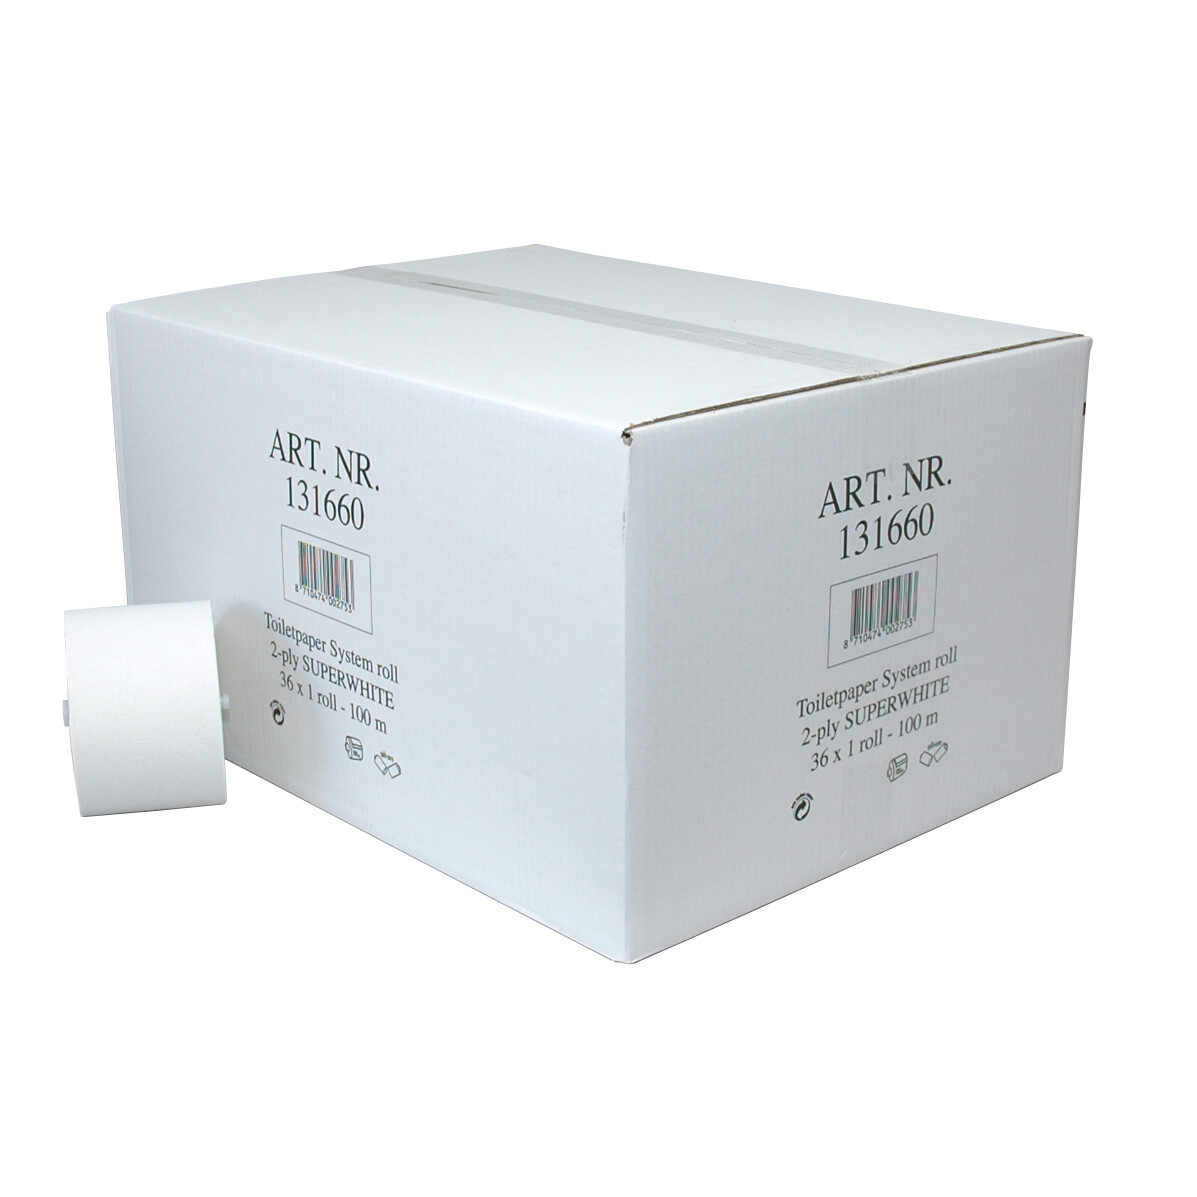 P50610BLK Euro recycled tissue met dop, verpakt per 36 stuks